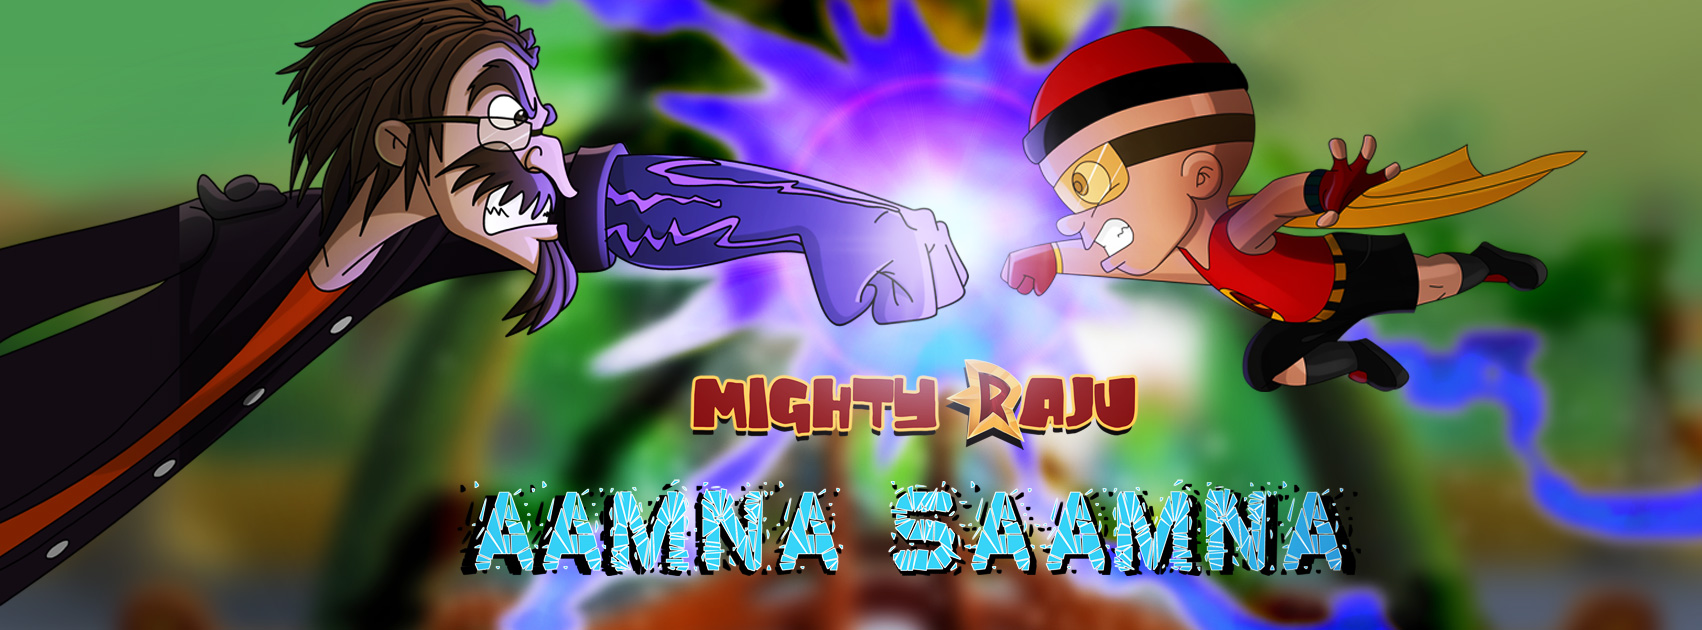 Watch Mighty Raju Aamna Saamna Full Movie | Cartoon Movies